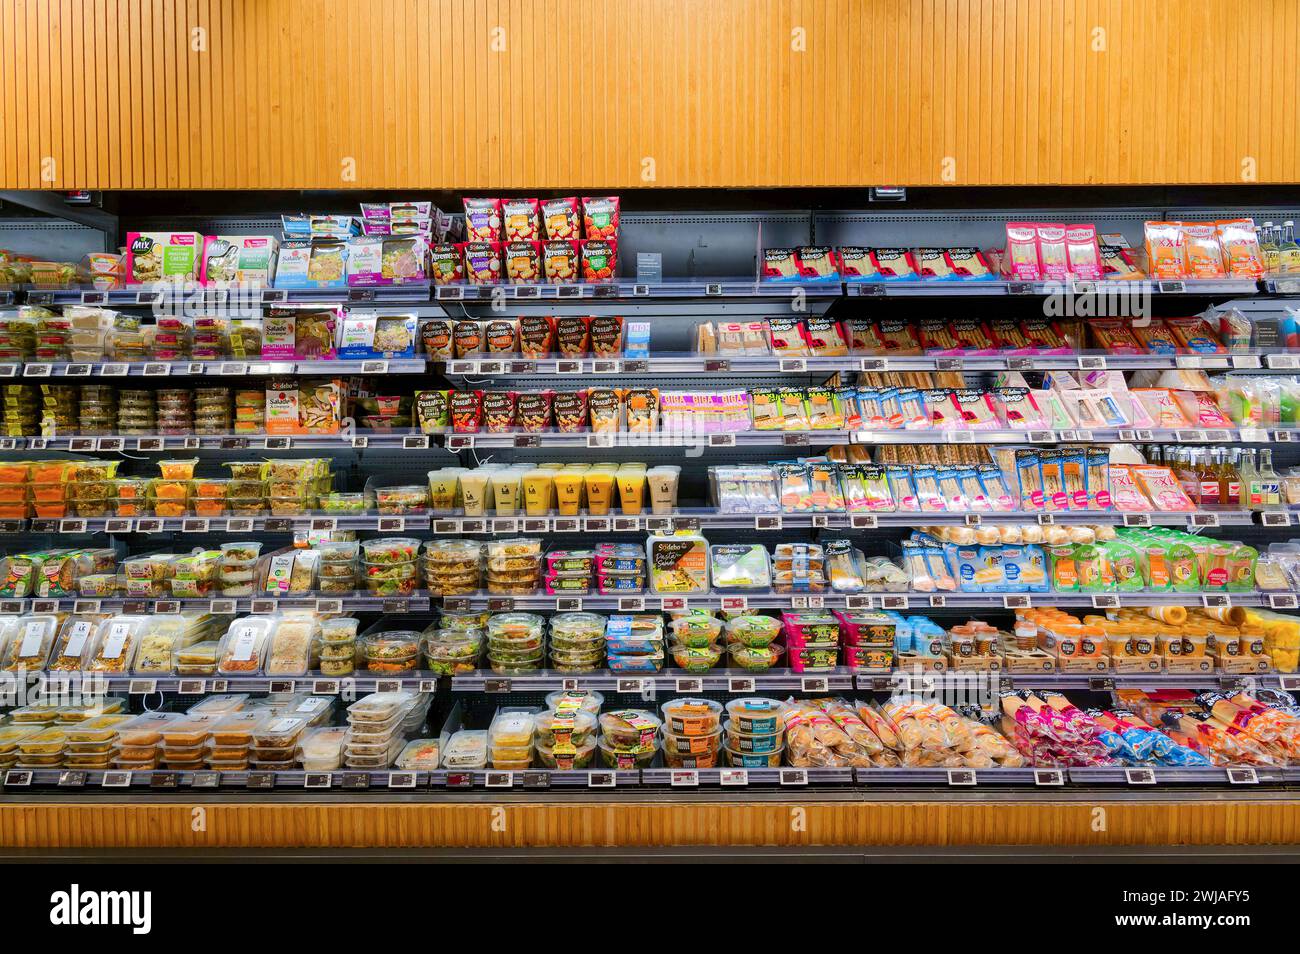 Section prêt-à-manger et sandwich d’un supermarché Monoprix dans le centre commercial Cap 3000, à Saint-Laurent-du-Var (sud-est de la France). Grignotage Banque D'Images